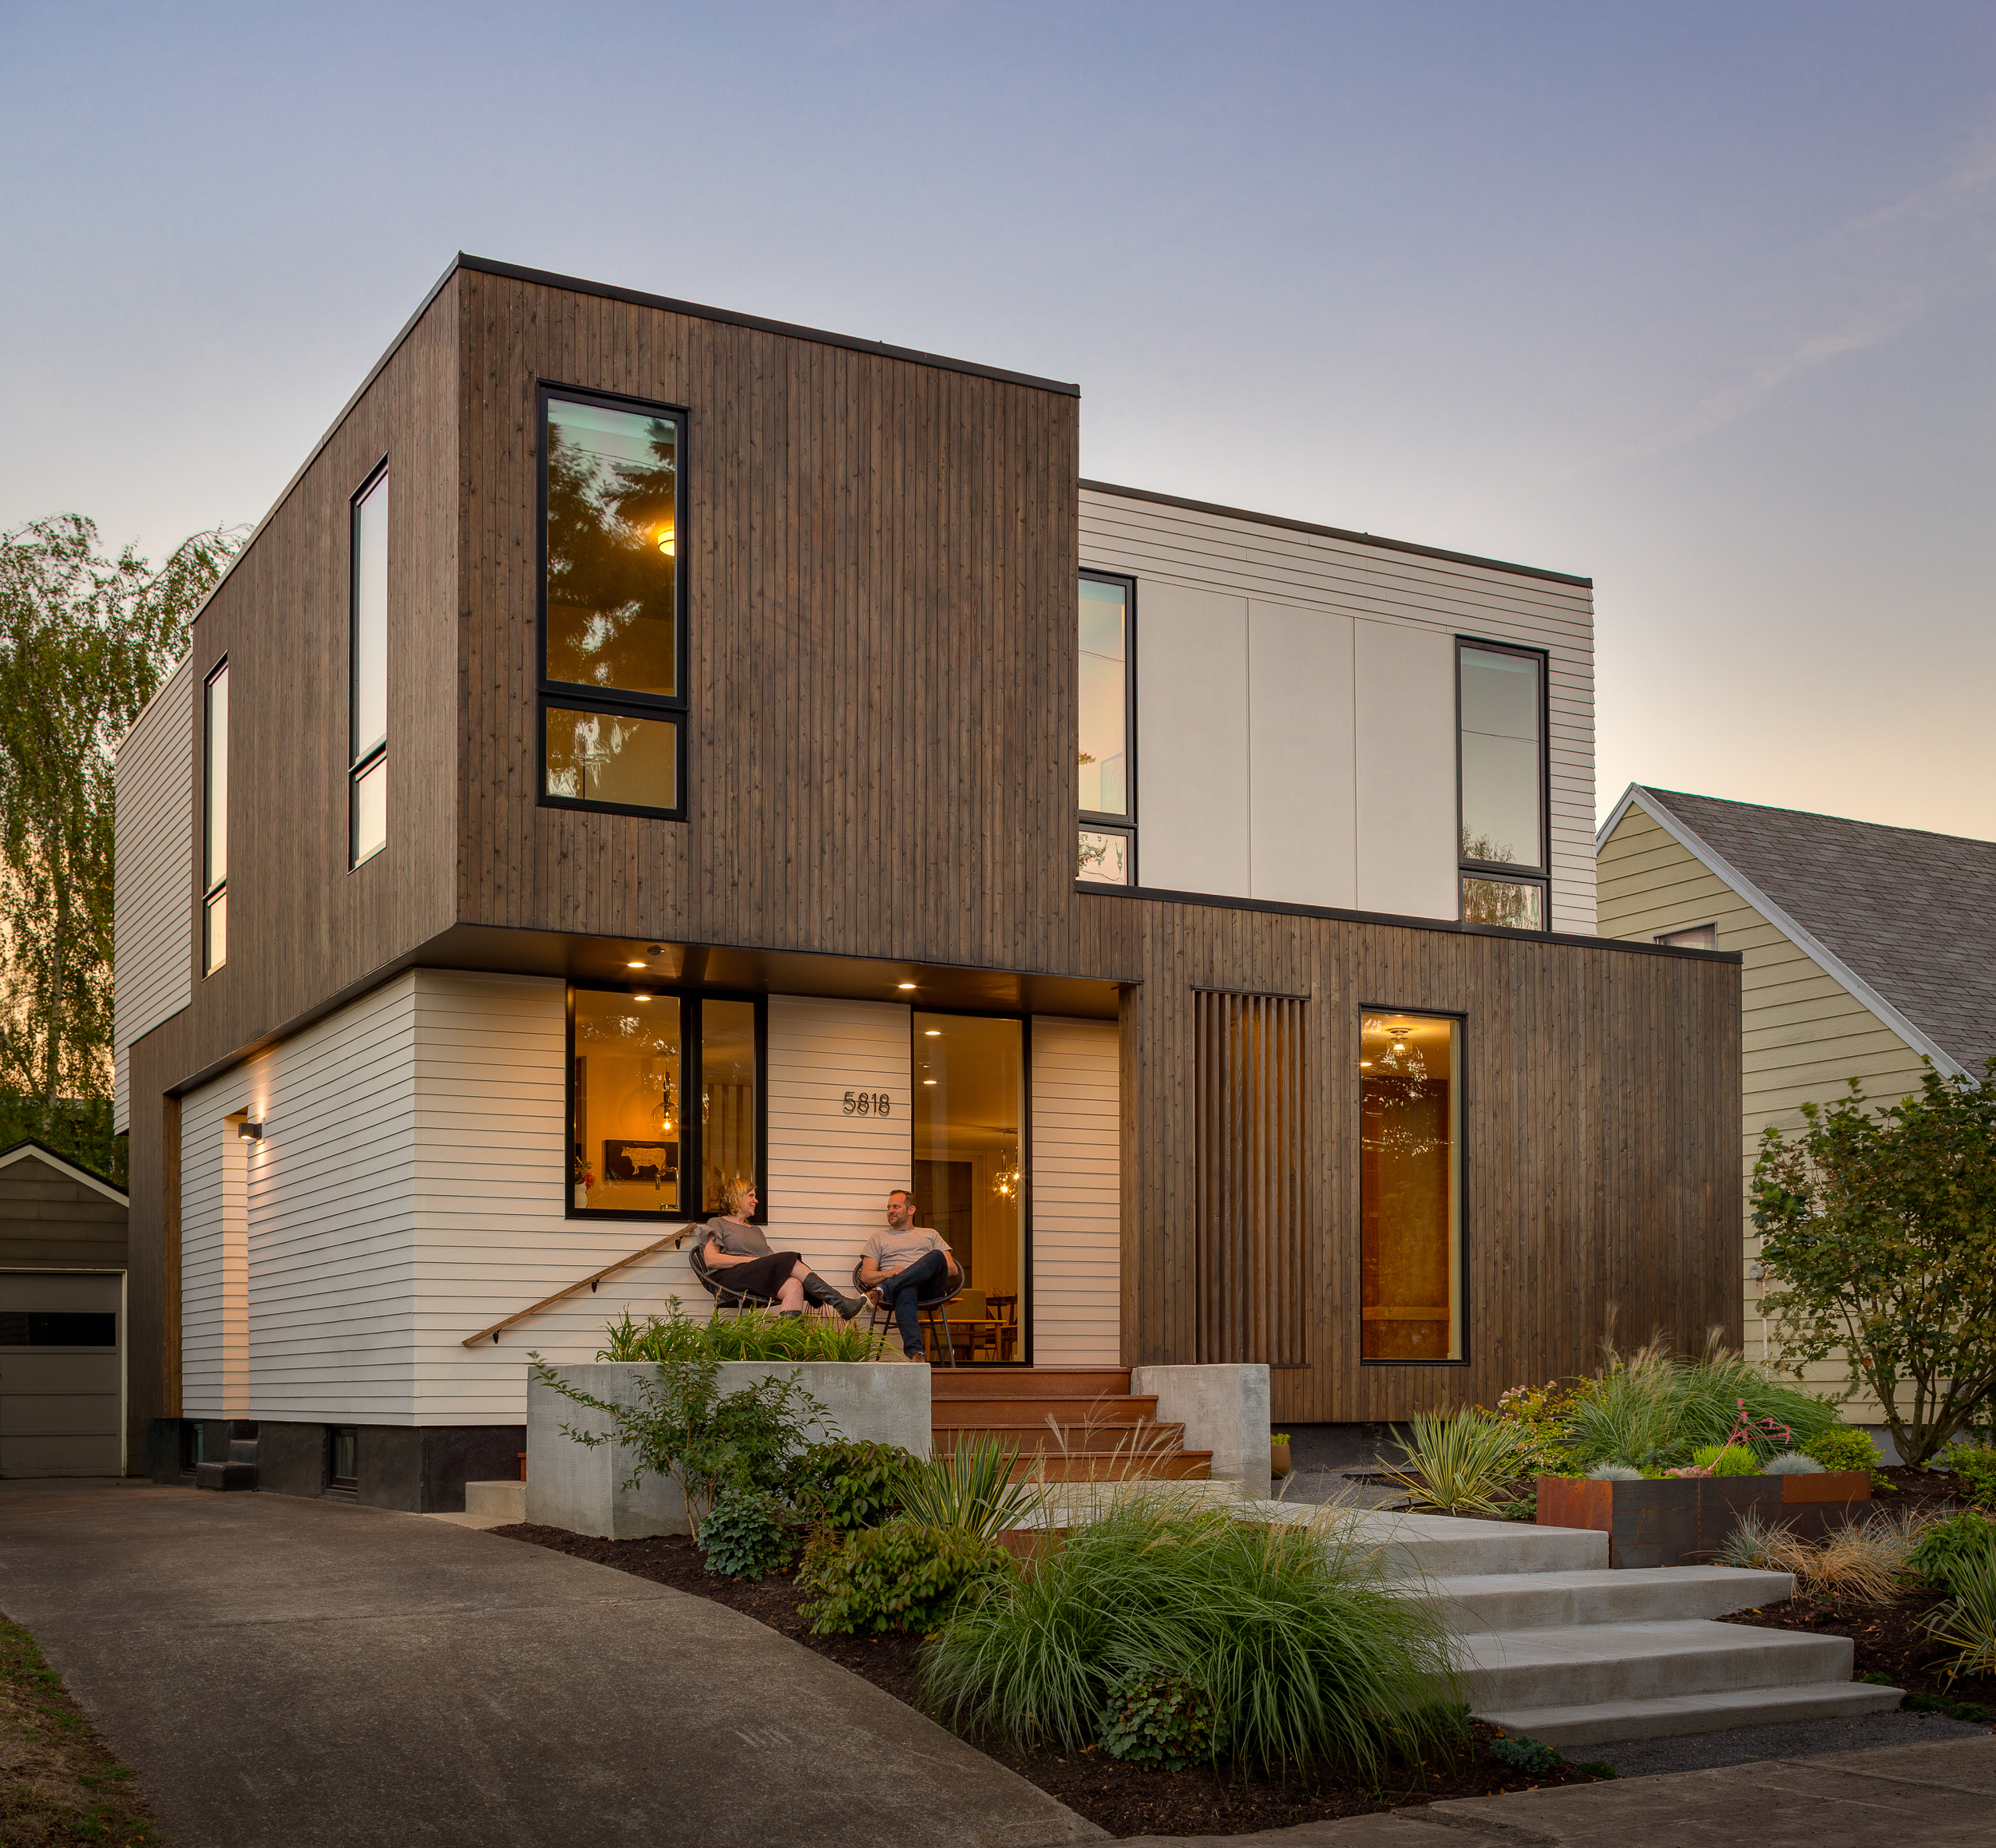  Loosemore Residence / SUM Design Studio + Architecture 